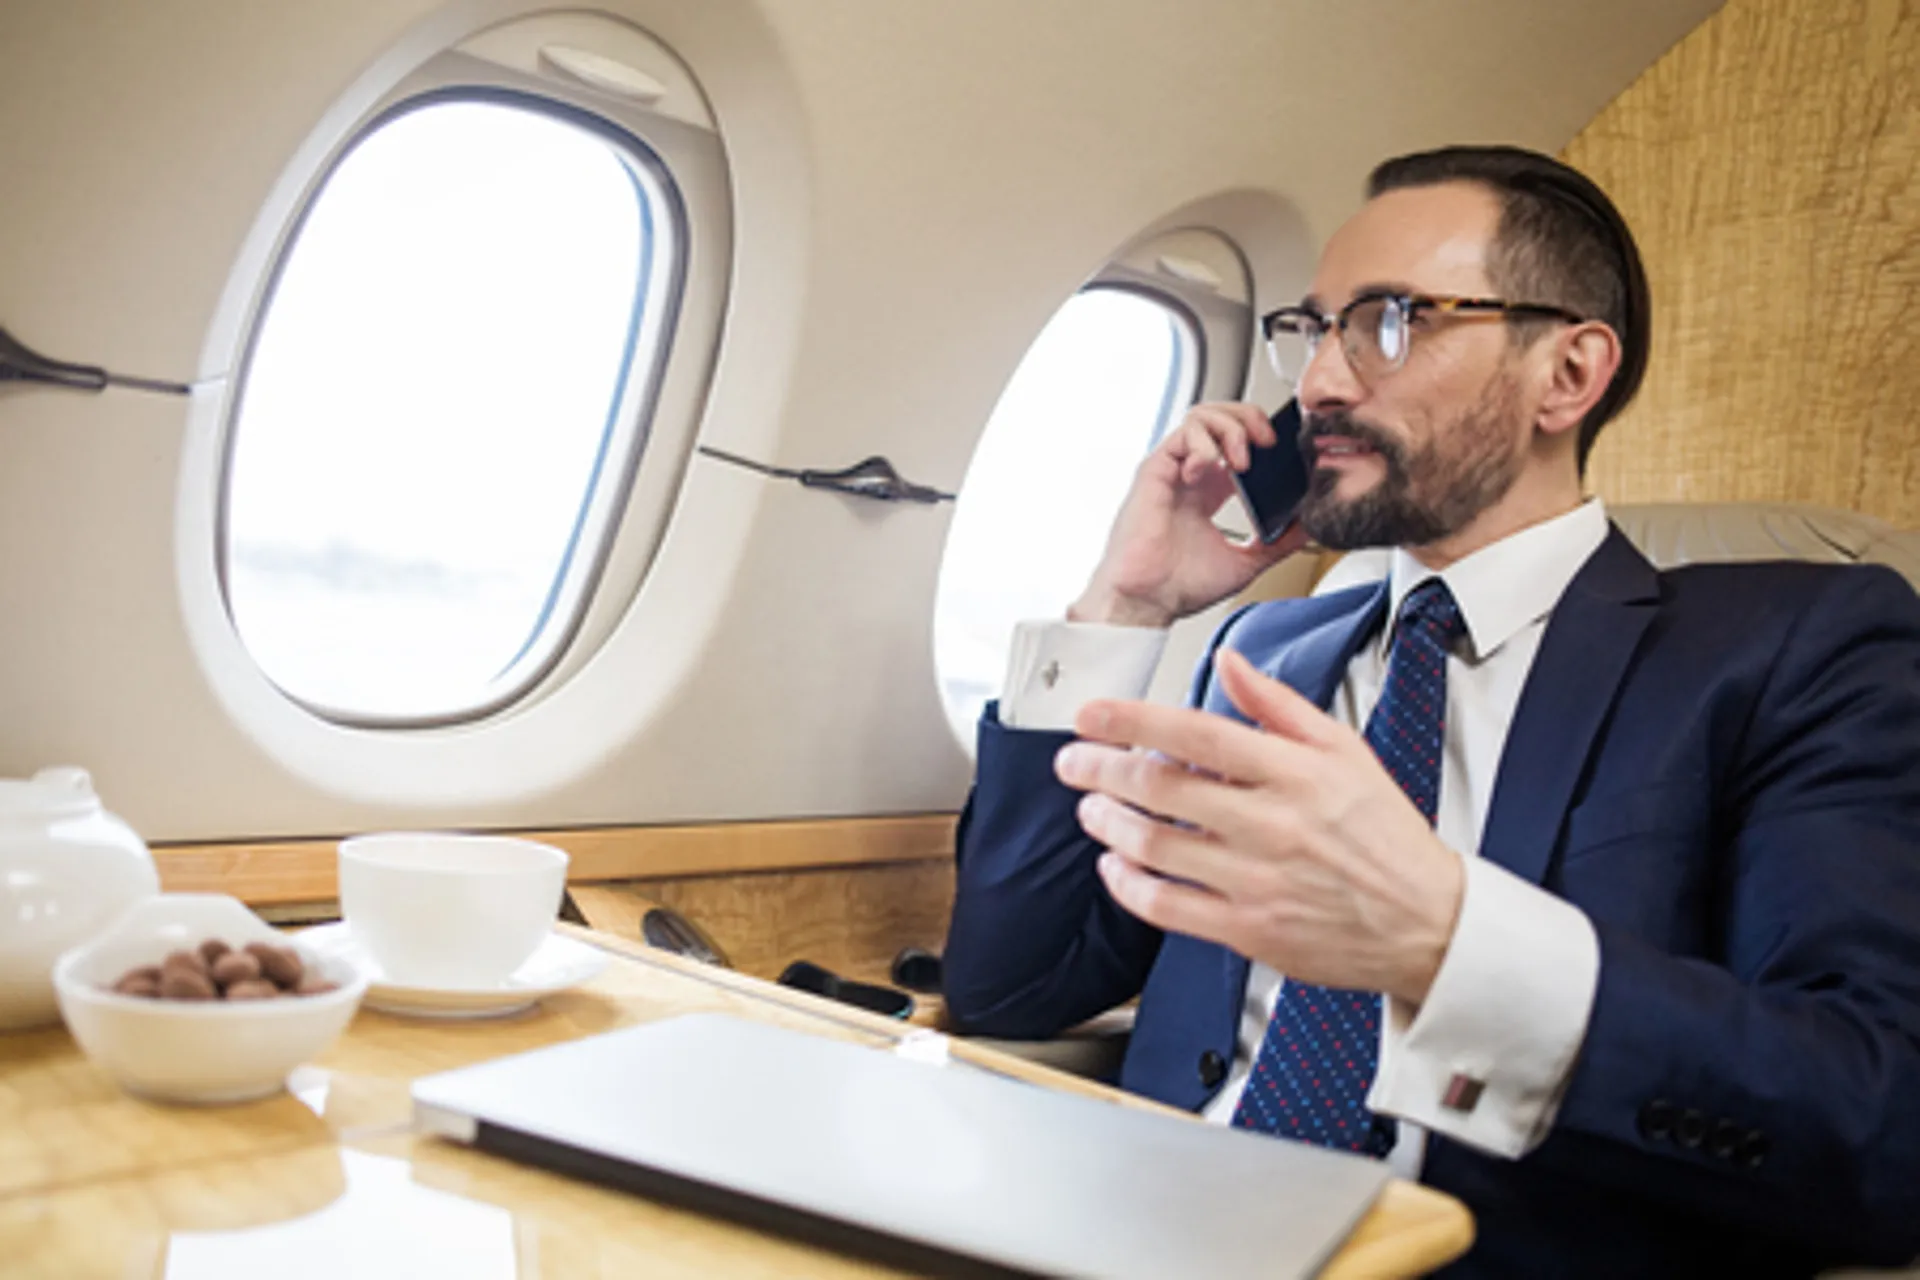 Los CFO tienen mas control en los viajes de negocios. Los ejecutivos de finanzas tienen más voz en los viajes debido al matrimonio de plataformas de viajes y gastos